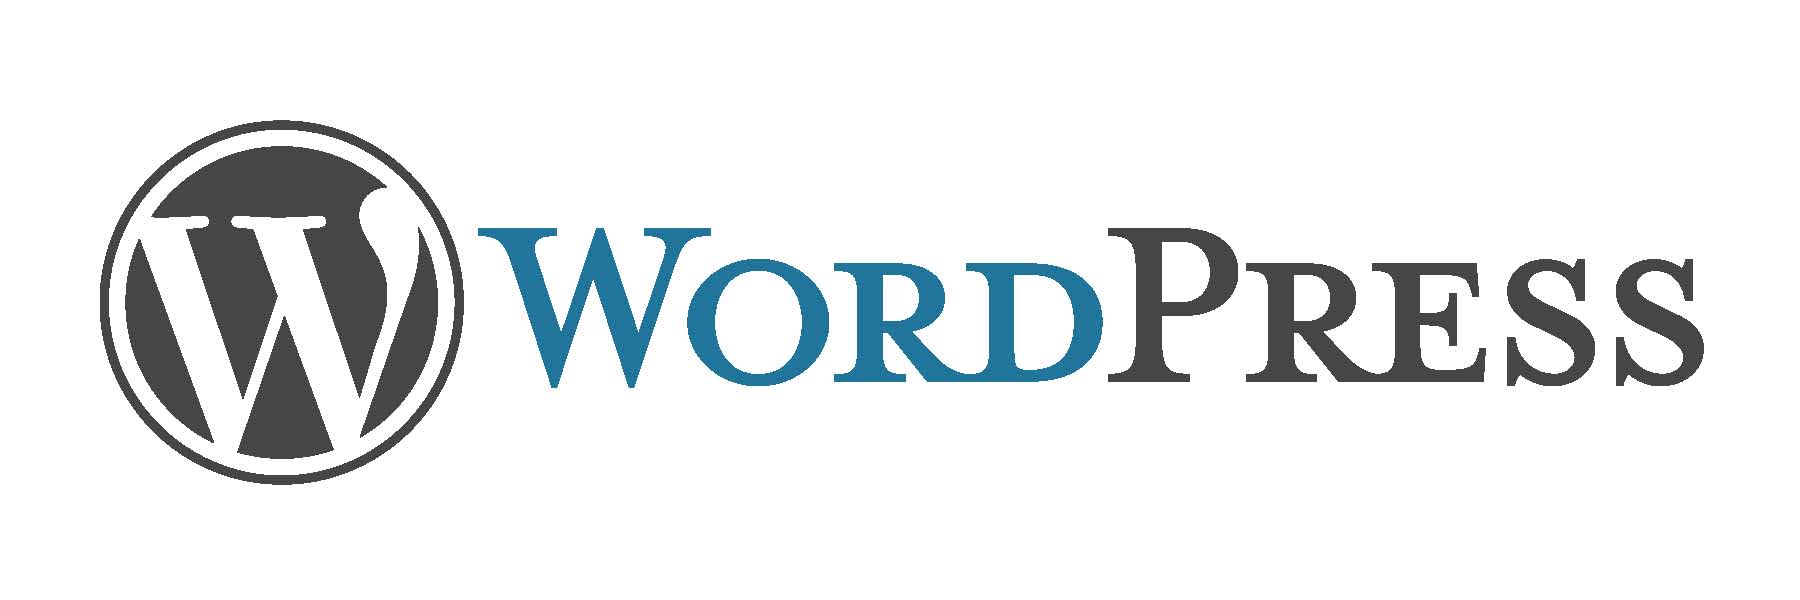 WordPress - одна з найпопулярніших CMS в світі